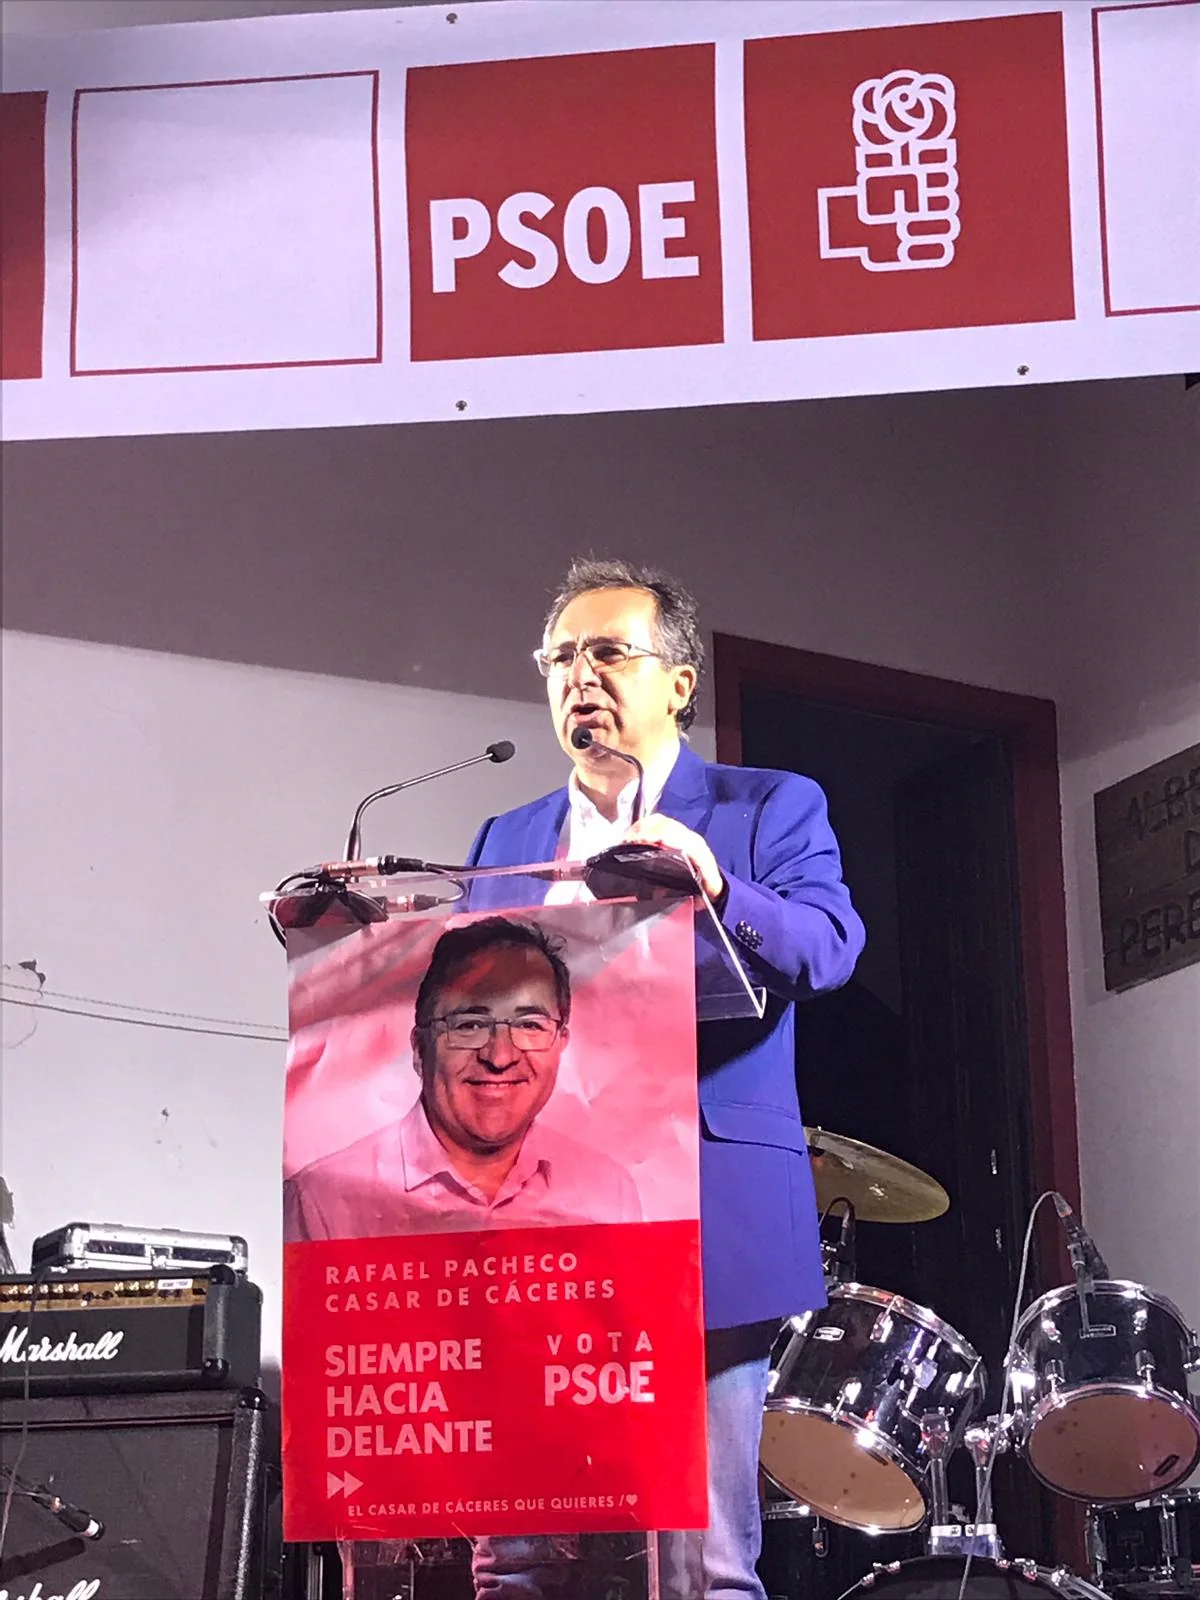 El PSOE vuelve a ganar y Rafael Pacheco revalida la alcaldía